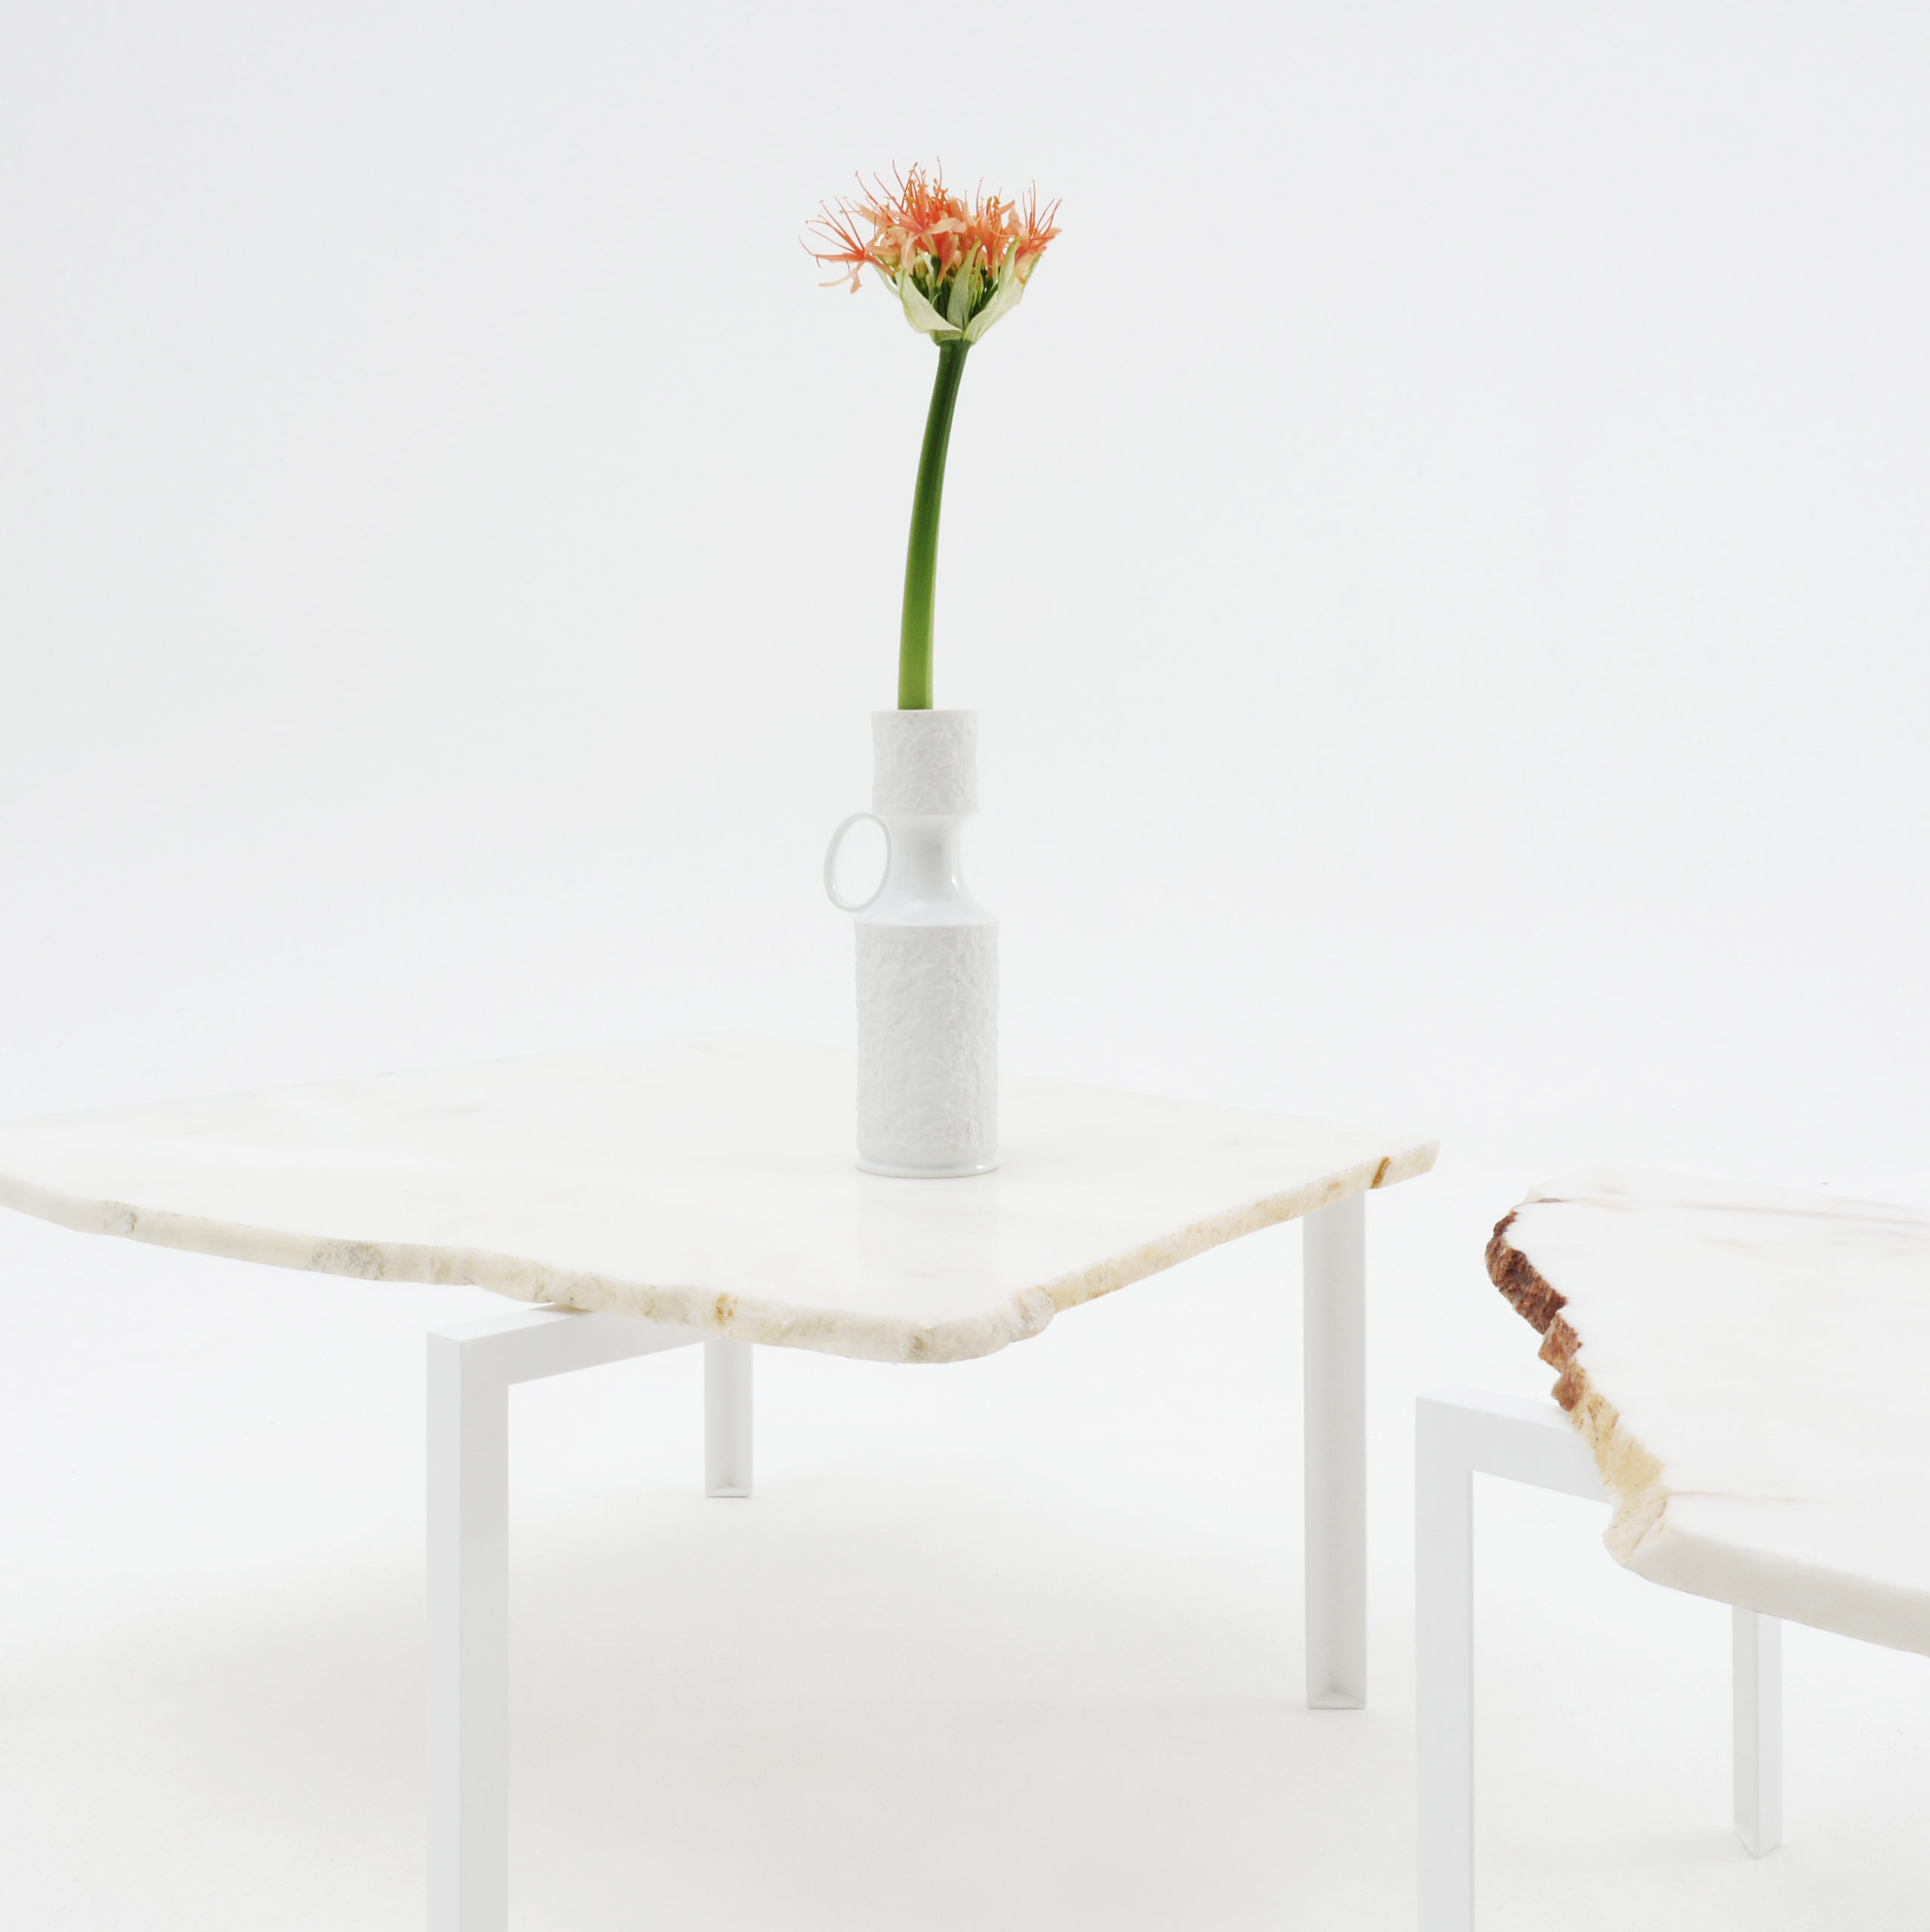 Beistelltisch von Atelier Haussmann entworfen von Hervé Humbert, Petite table d'angle ist ein kleiner Tisch aus Marmor Reststücke, es sind alle Unikate, ein produkt zwischen Kunst und Design, 100% recykelte Materialien,Manufaktur made in Germany